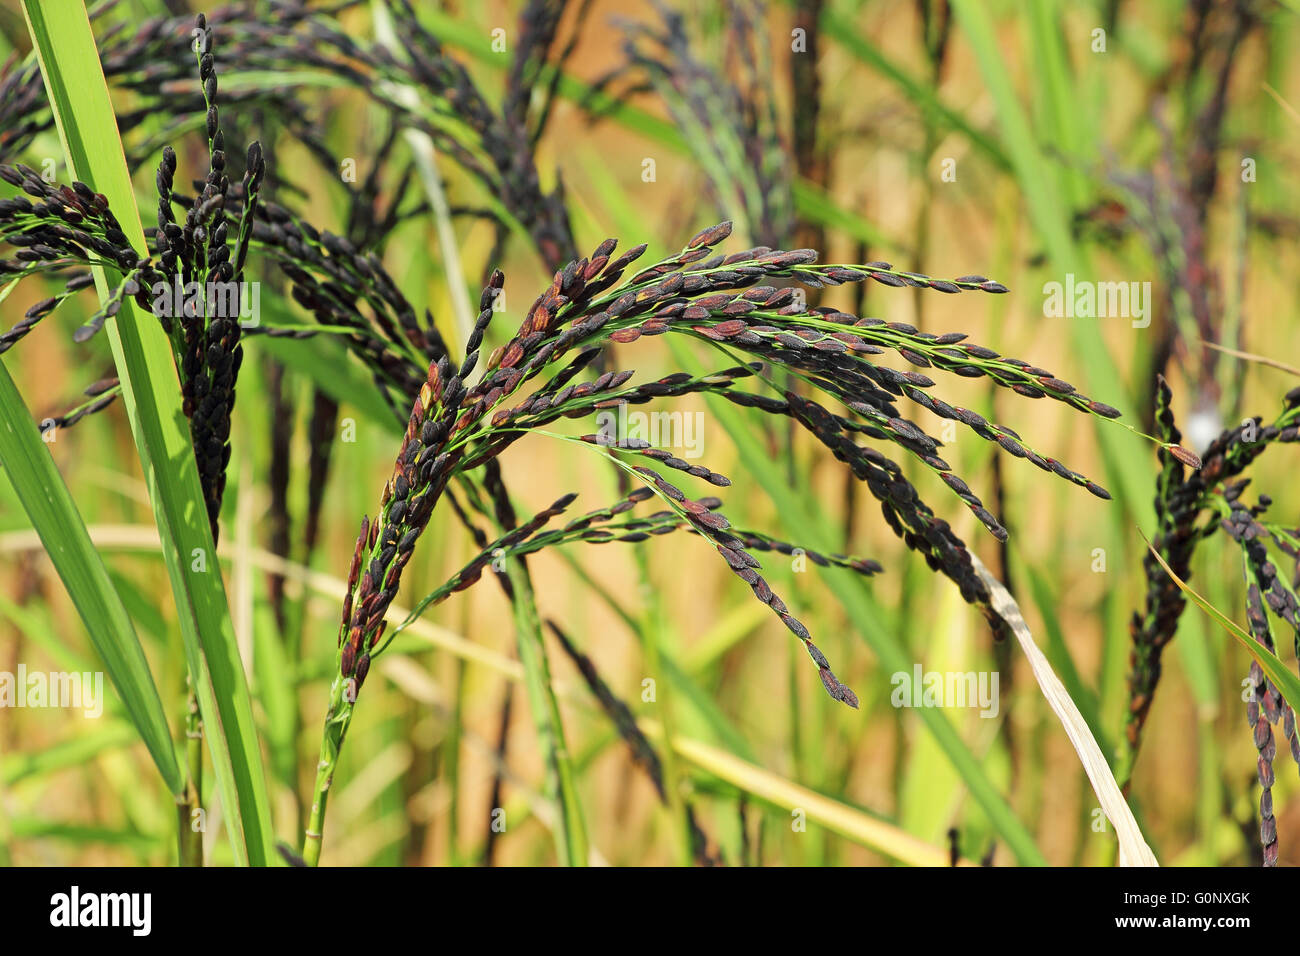 De cerca del tallo de la planta de arroz híbrido con granos provenientes de la India. Foto de stock